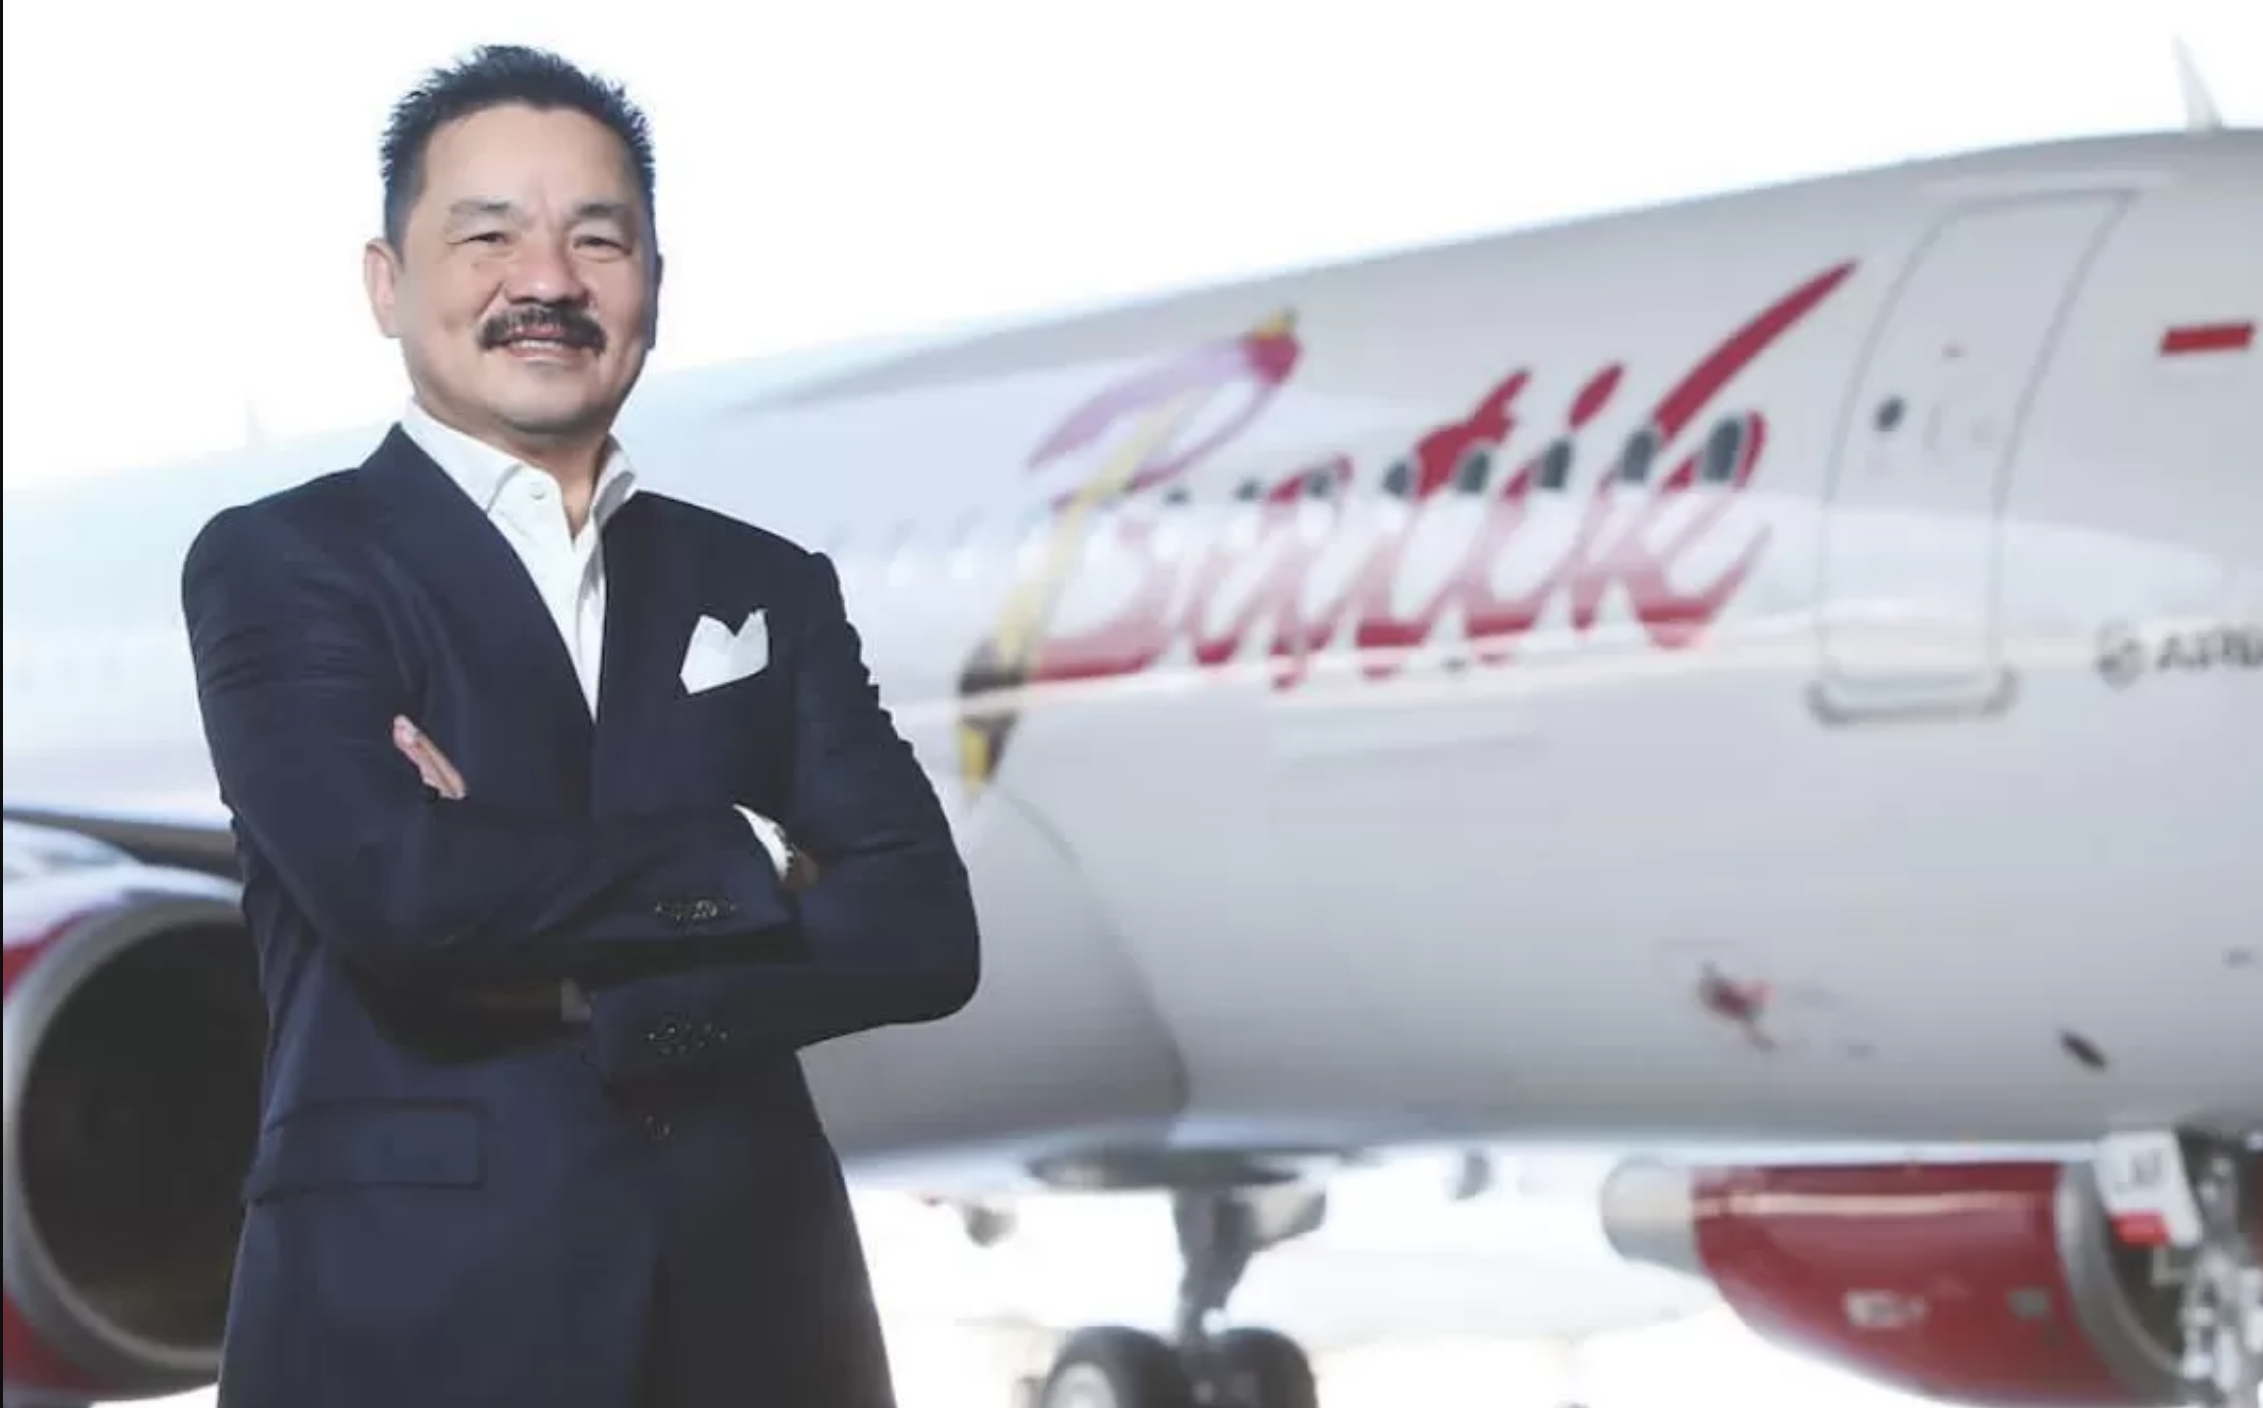 TERNYATA WONG CIREBON, Inilah Rusdi Kirana Pemilik Lion Air, Pesawatnya Wara-wiri di Bandara Kertajati